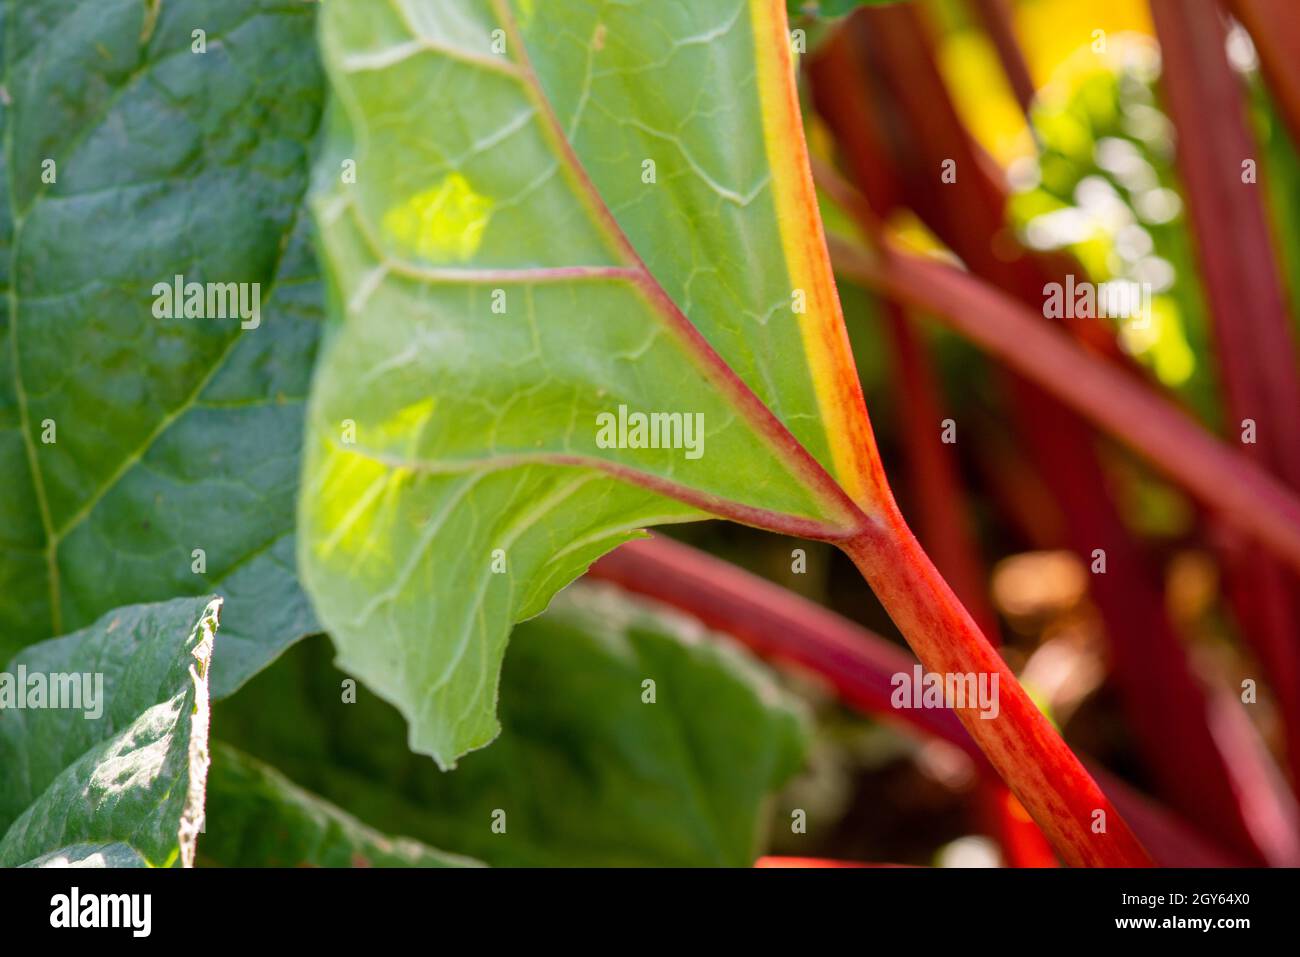 Hohe gerippte Stiele aus Schweizer Mangold-Grüns. Grünes und rötlich belaubtes Gemüse wächst in dunkelreicher Erde. Die Collard-Grüns haben rote und orangefarbene Stiele. Stockfoto